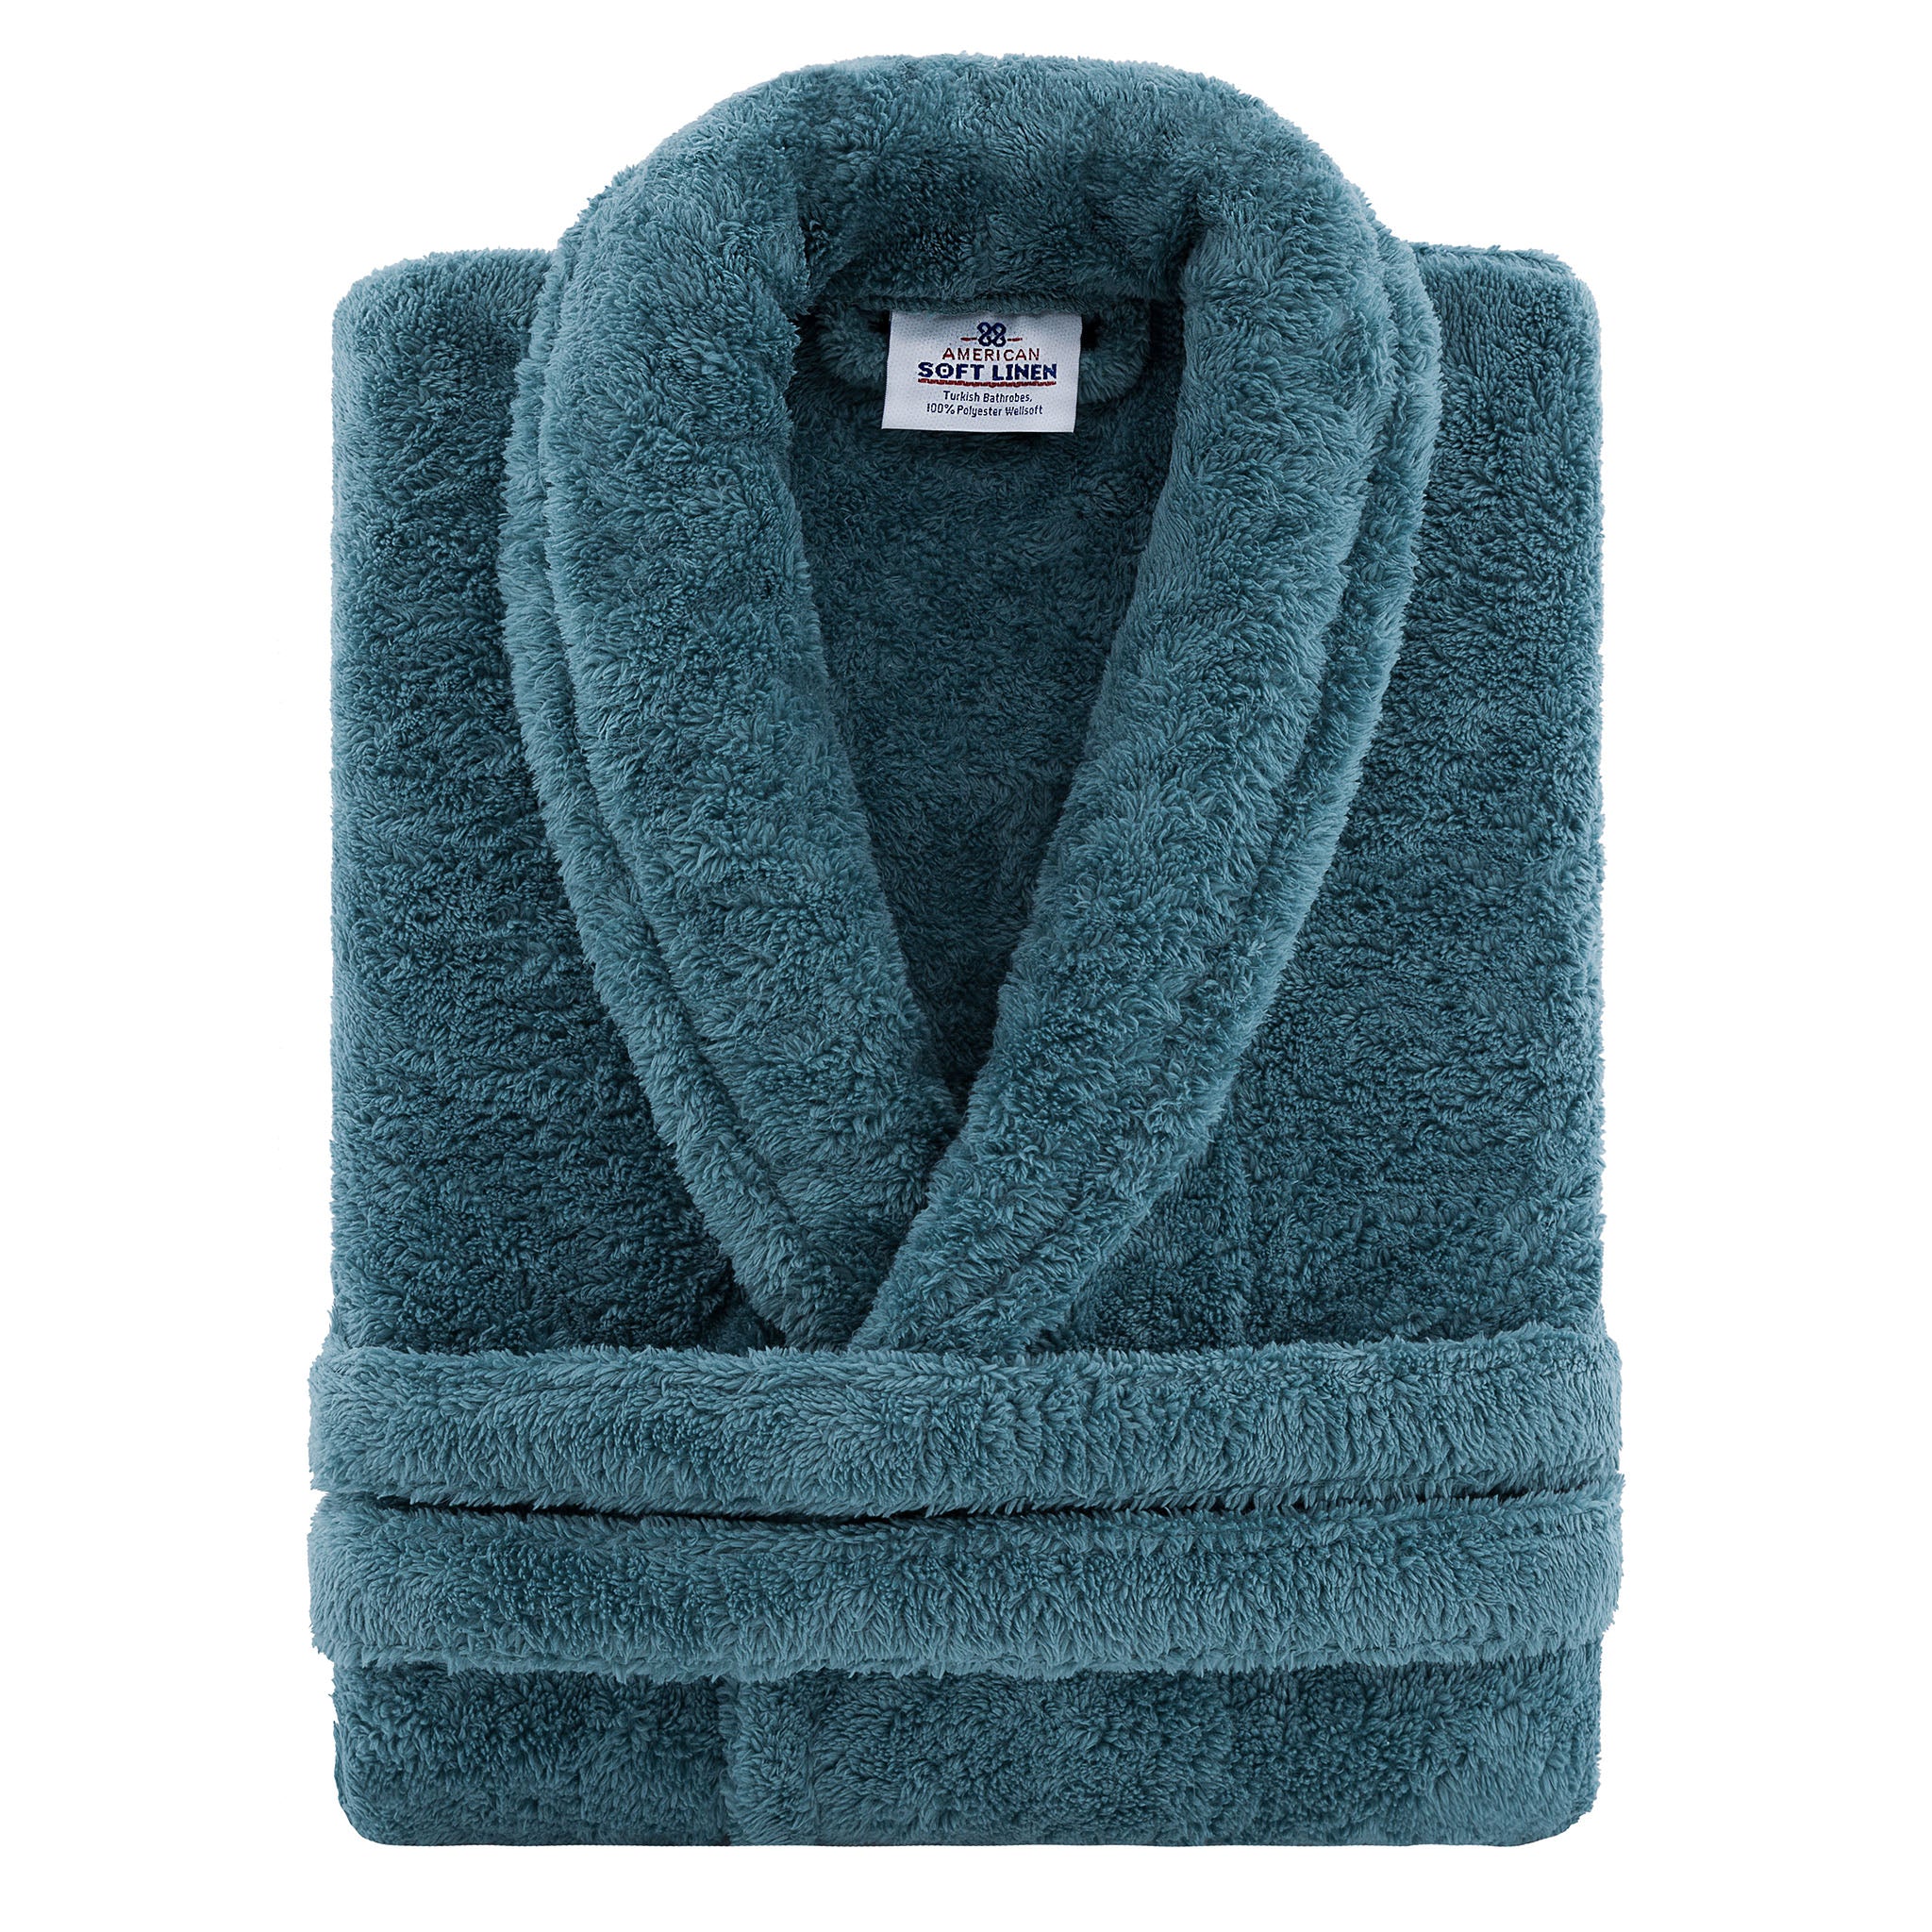 American Soft Linen Super Soft, Absorbent and Fluffy, Unisex Fleece Bathrobe XL-XXL-colonial-blue-3